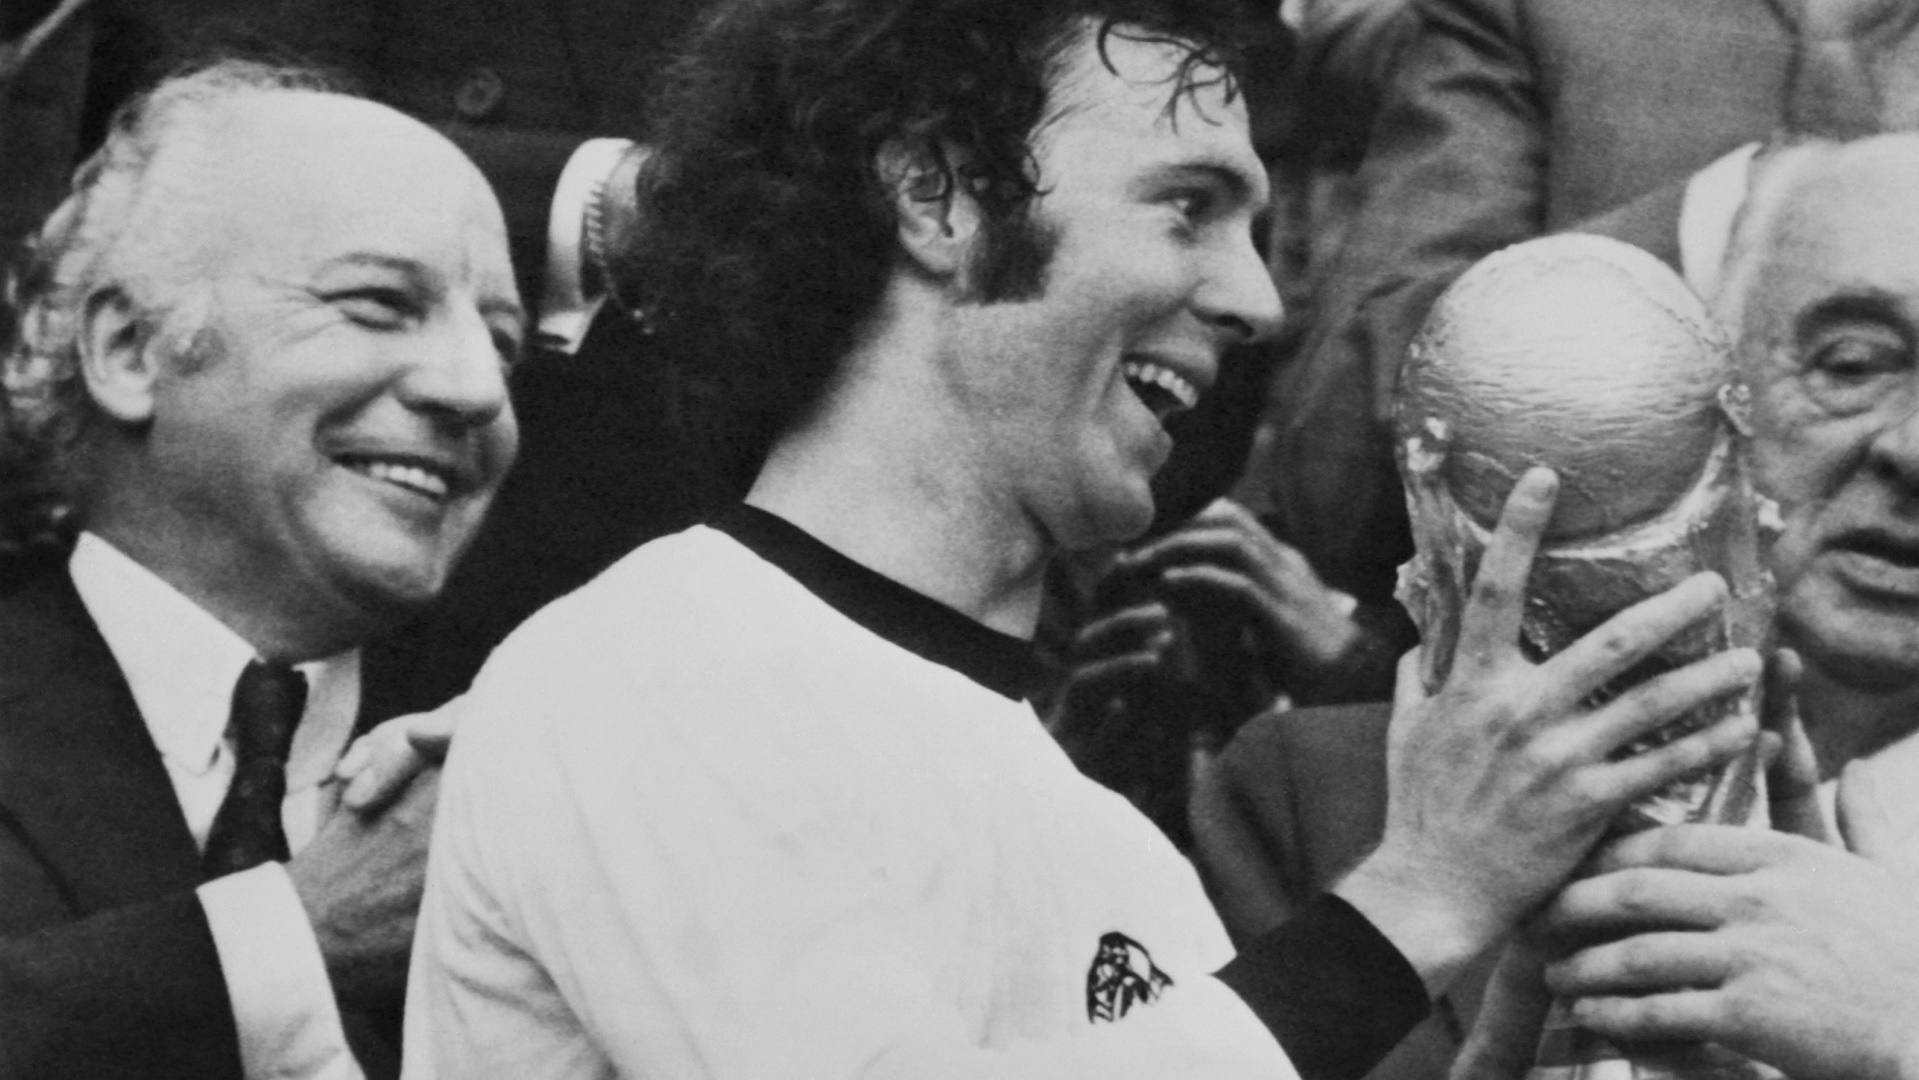 Franz Beckenbauer empfing 1974 den WM-Pokal